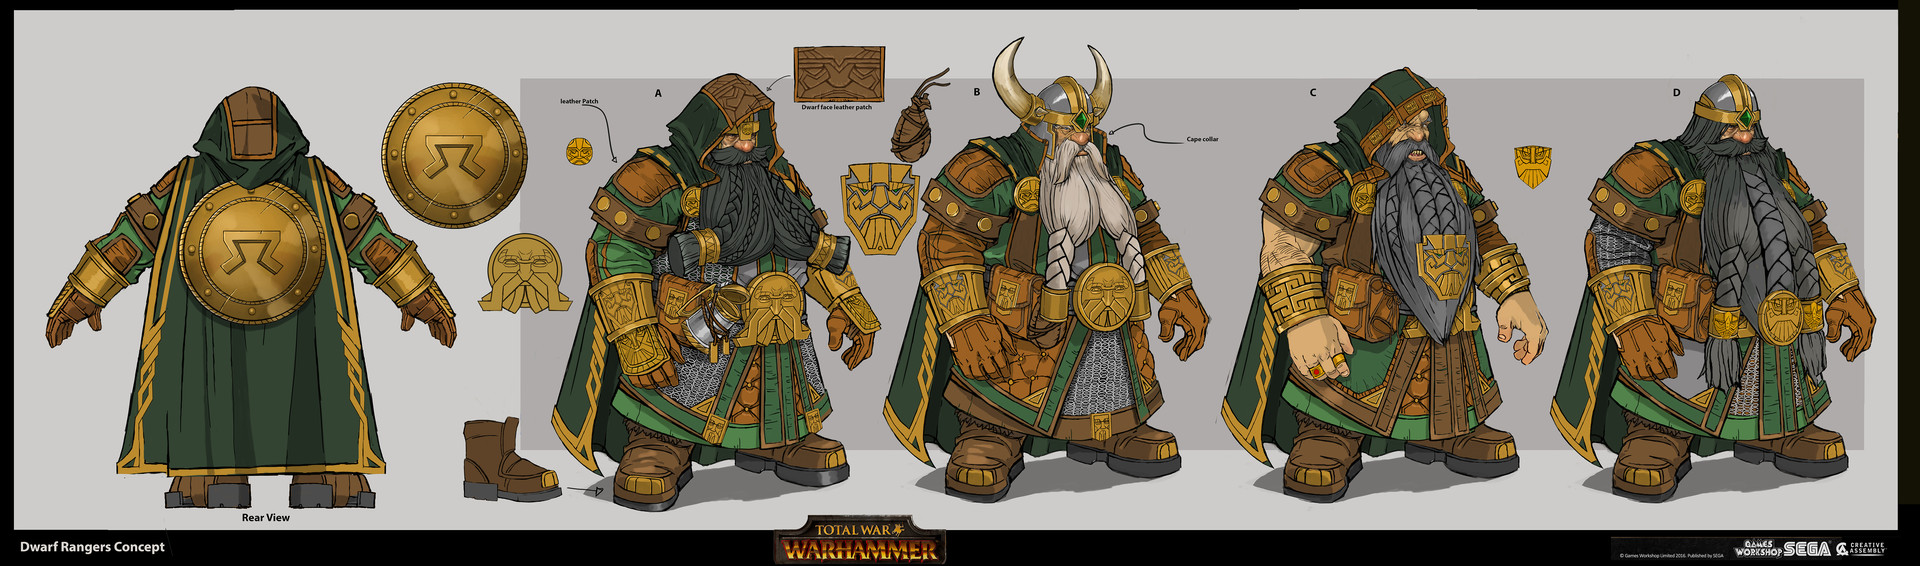 warhammer total war dwarf